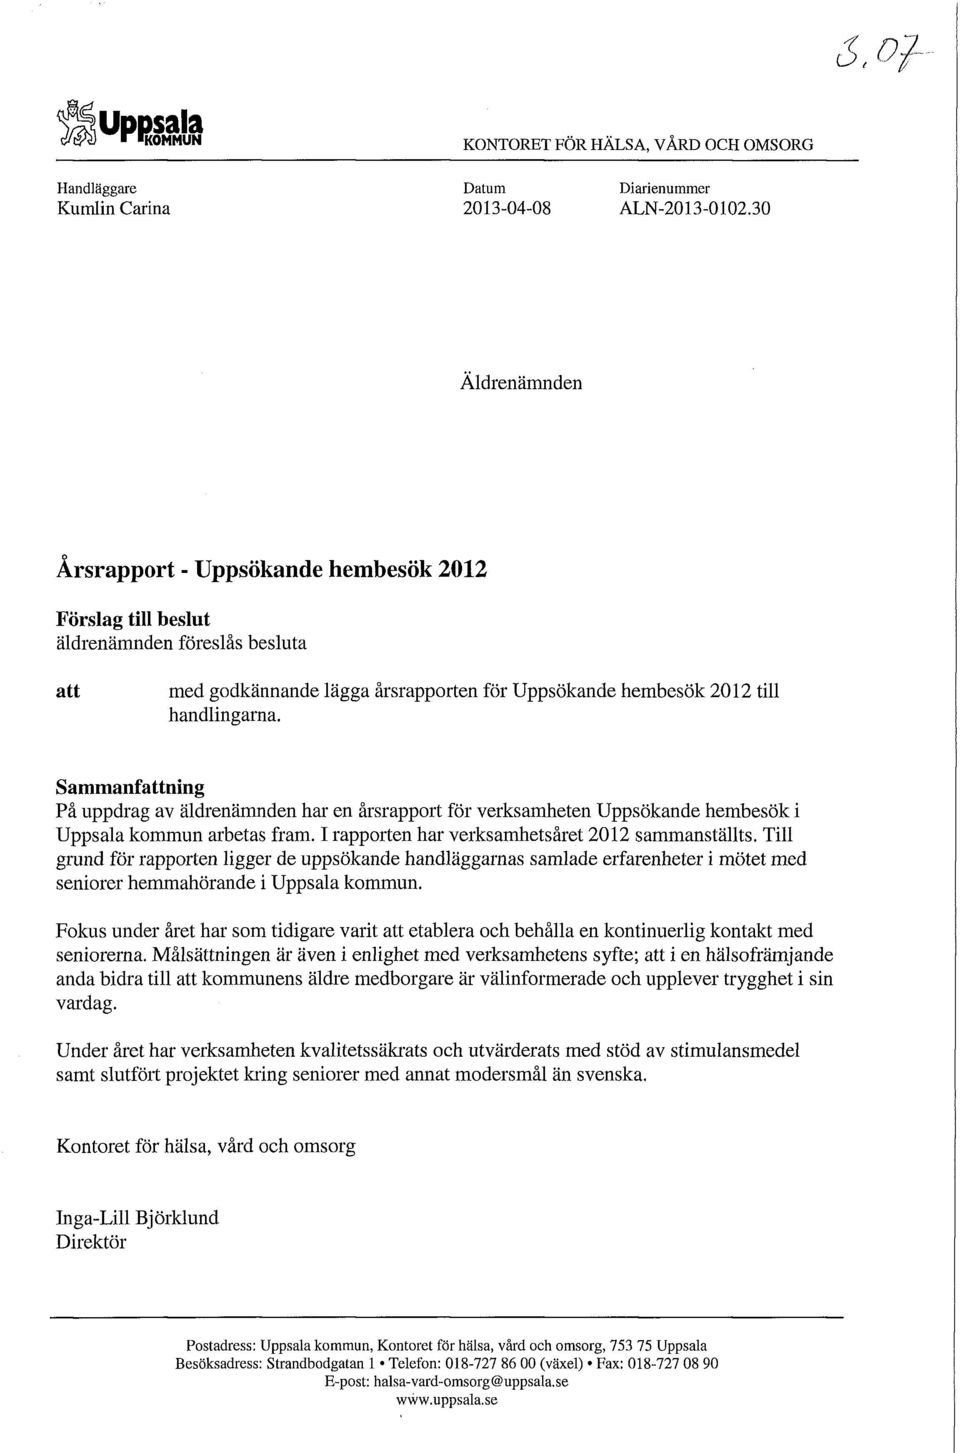 Sammanfattning På uppdrag av äldrenämnden har en årsrapport för verksamheten Uppsökande hembesök i Uppsala kommun arbetas fram. I rapporten har verksamhetsåret 2012 sammanställts.